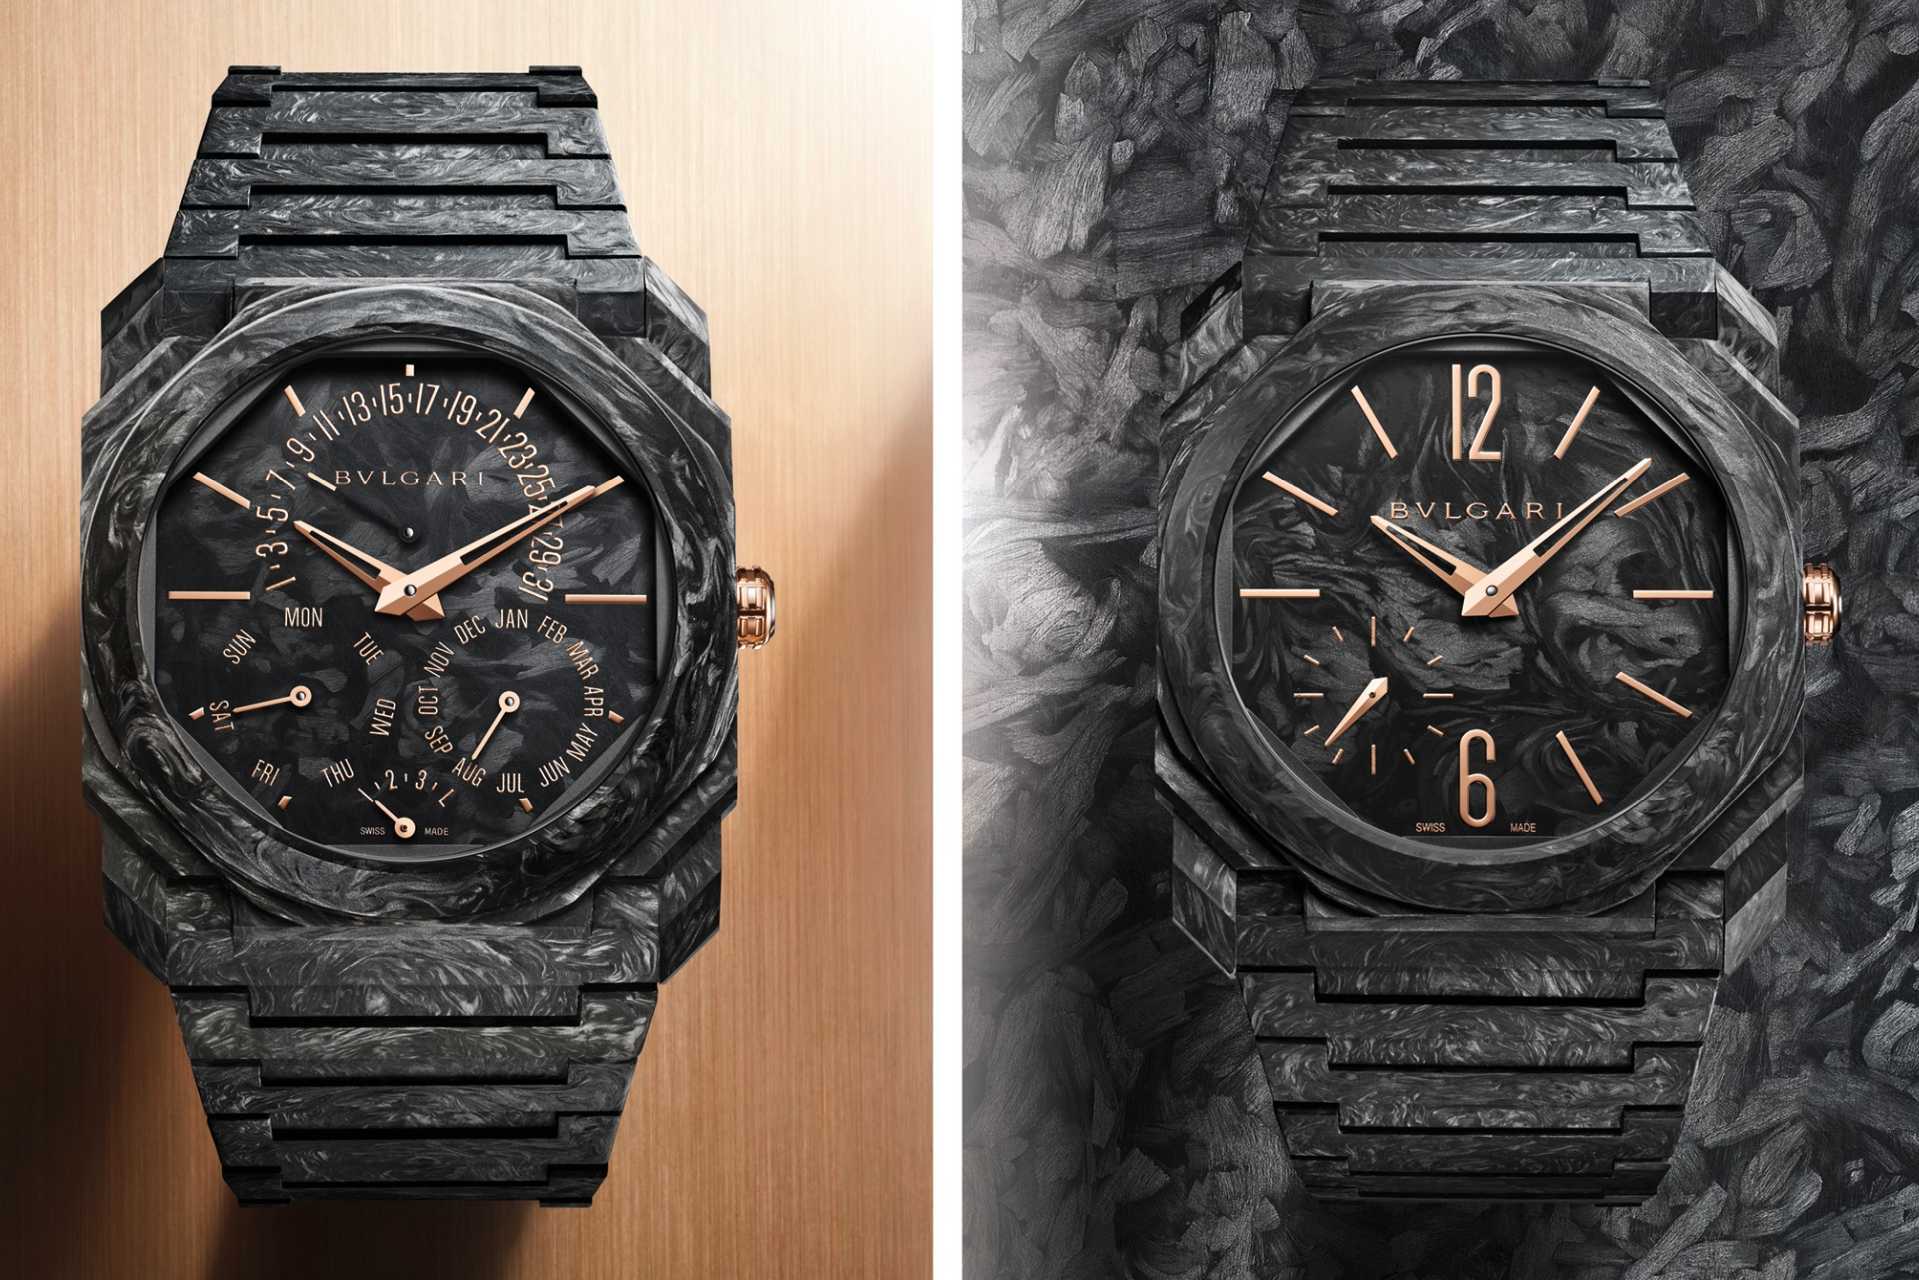 寶格麗Octo Finissimo系列推出全新CarbonGold碳金超薄自動錶與超薄萬年曆錶